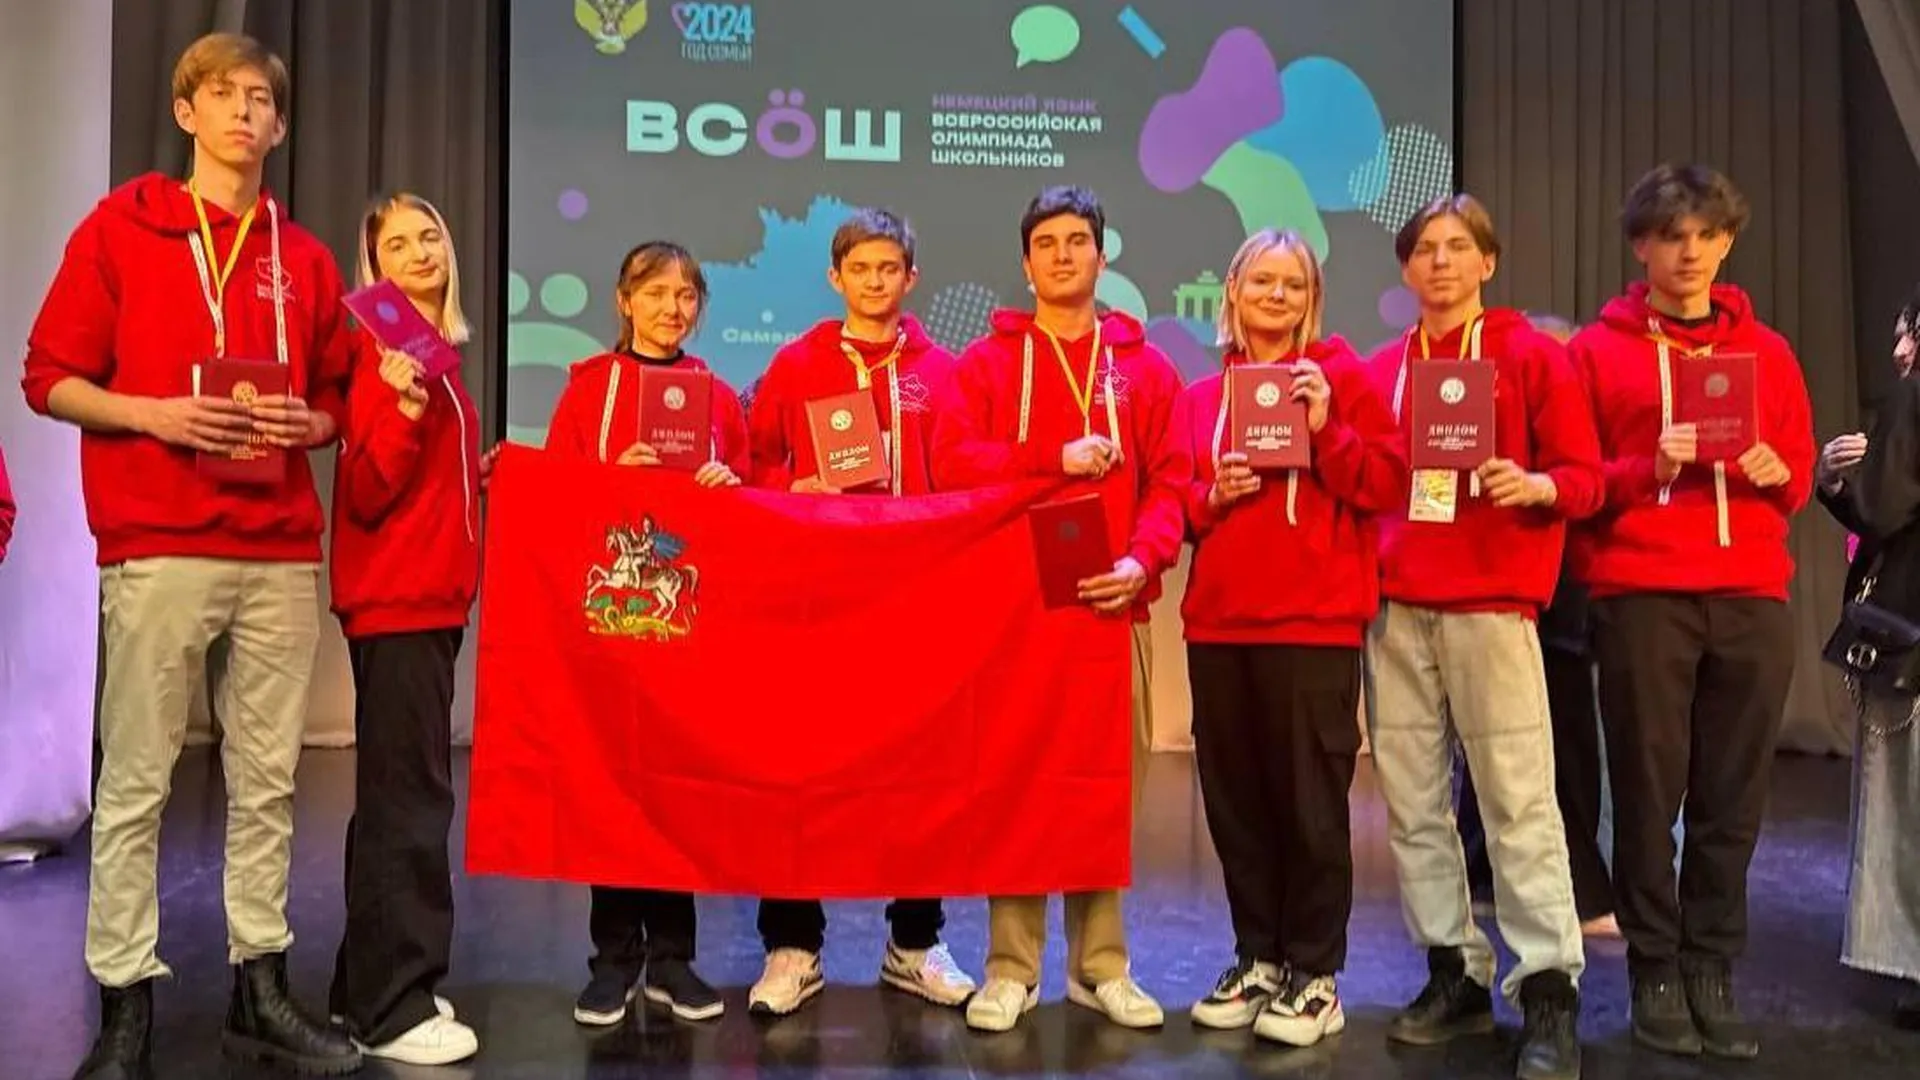 Подмосковье получило 8 наград на Всероссийской олимпиаде школьников по немецкому языку